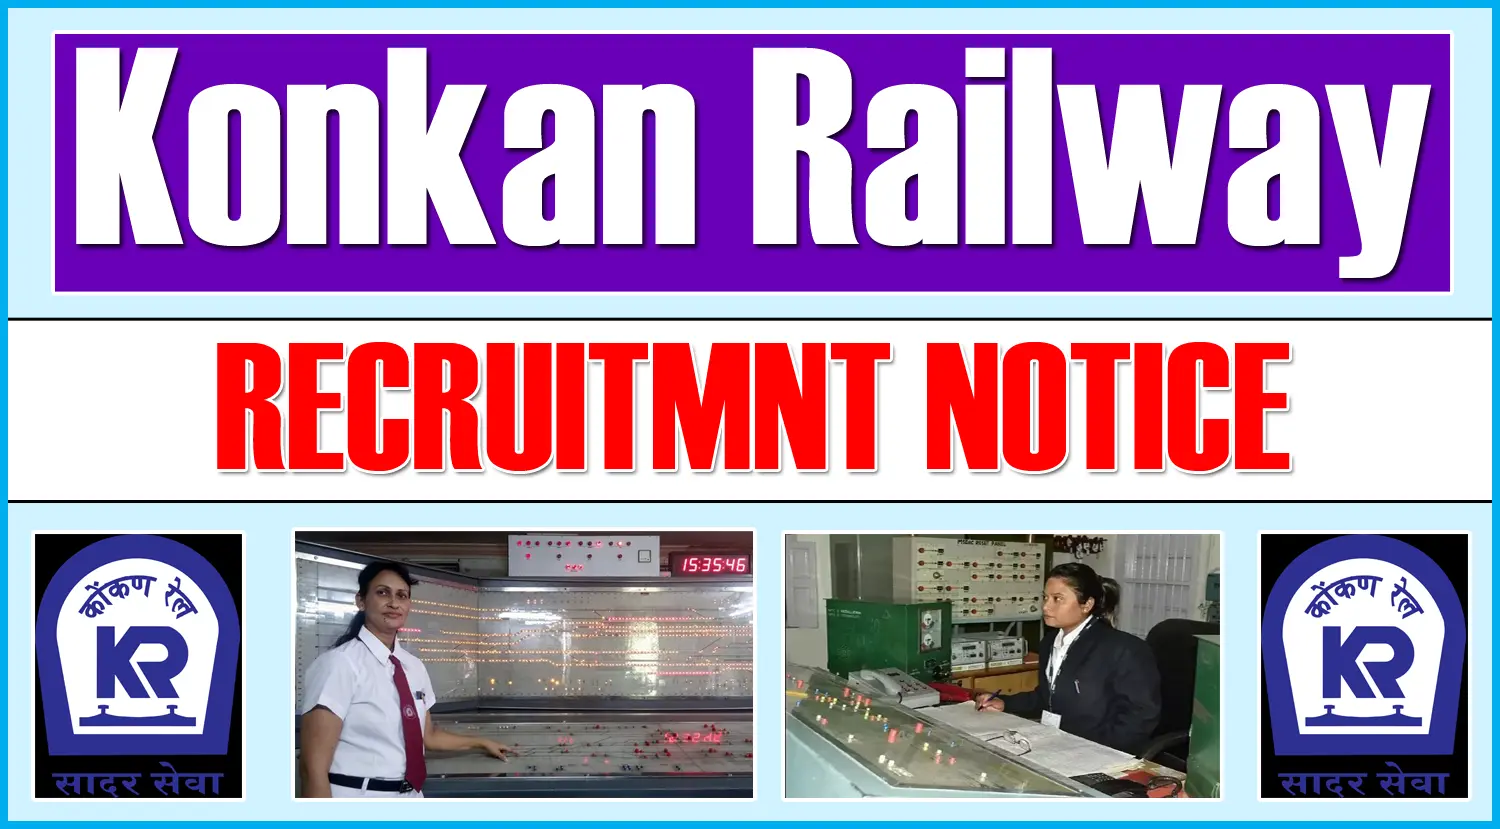 Konkan Railway Recruitment 2024